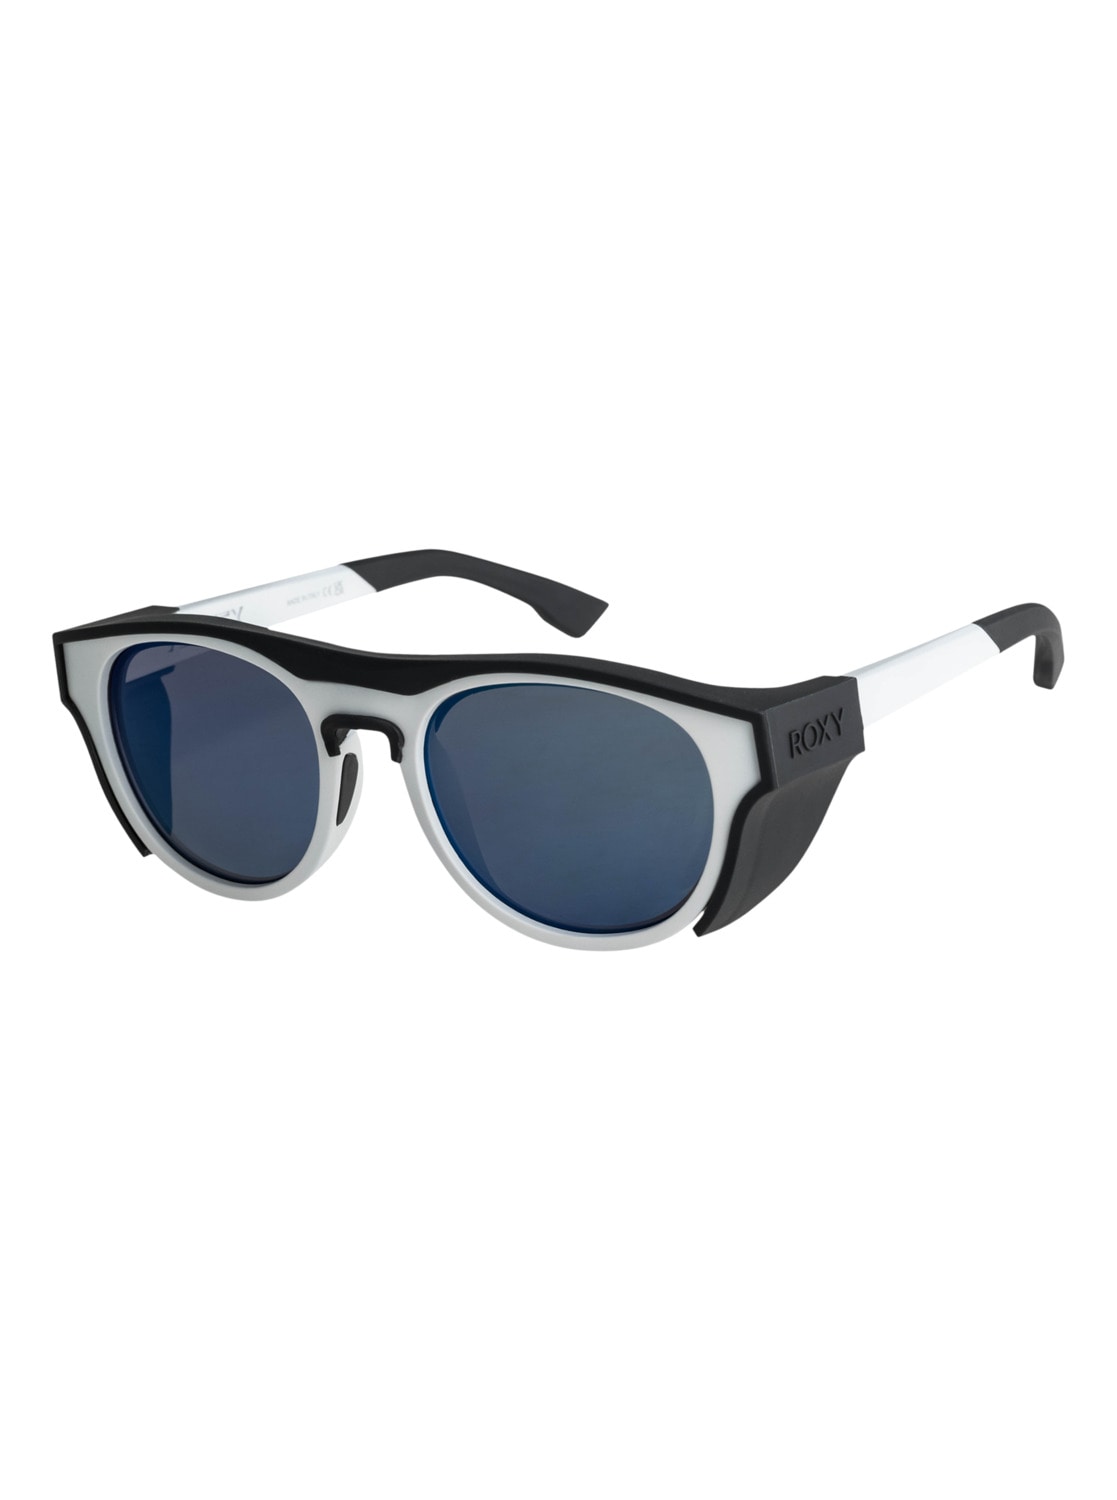 Outlet & Damen | SALE BAUR Sonnenbrillen günstige Angebote ▷